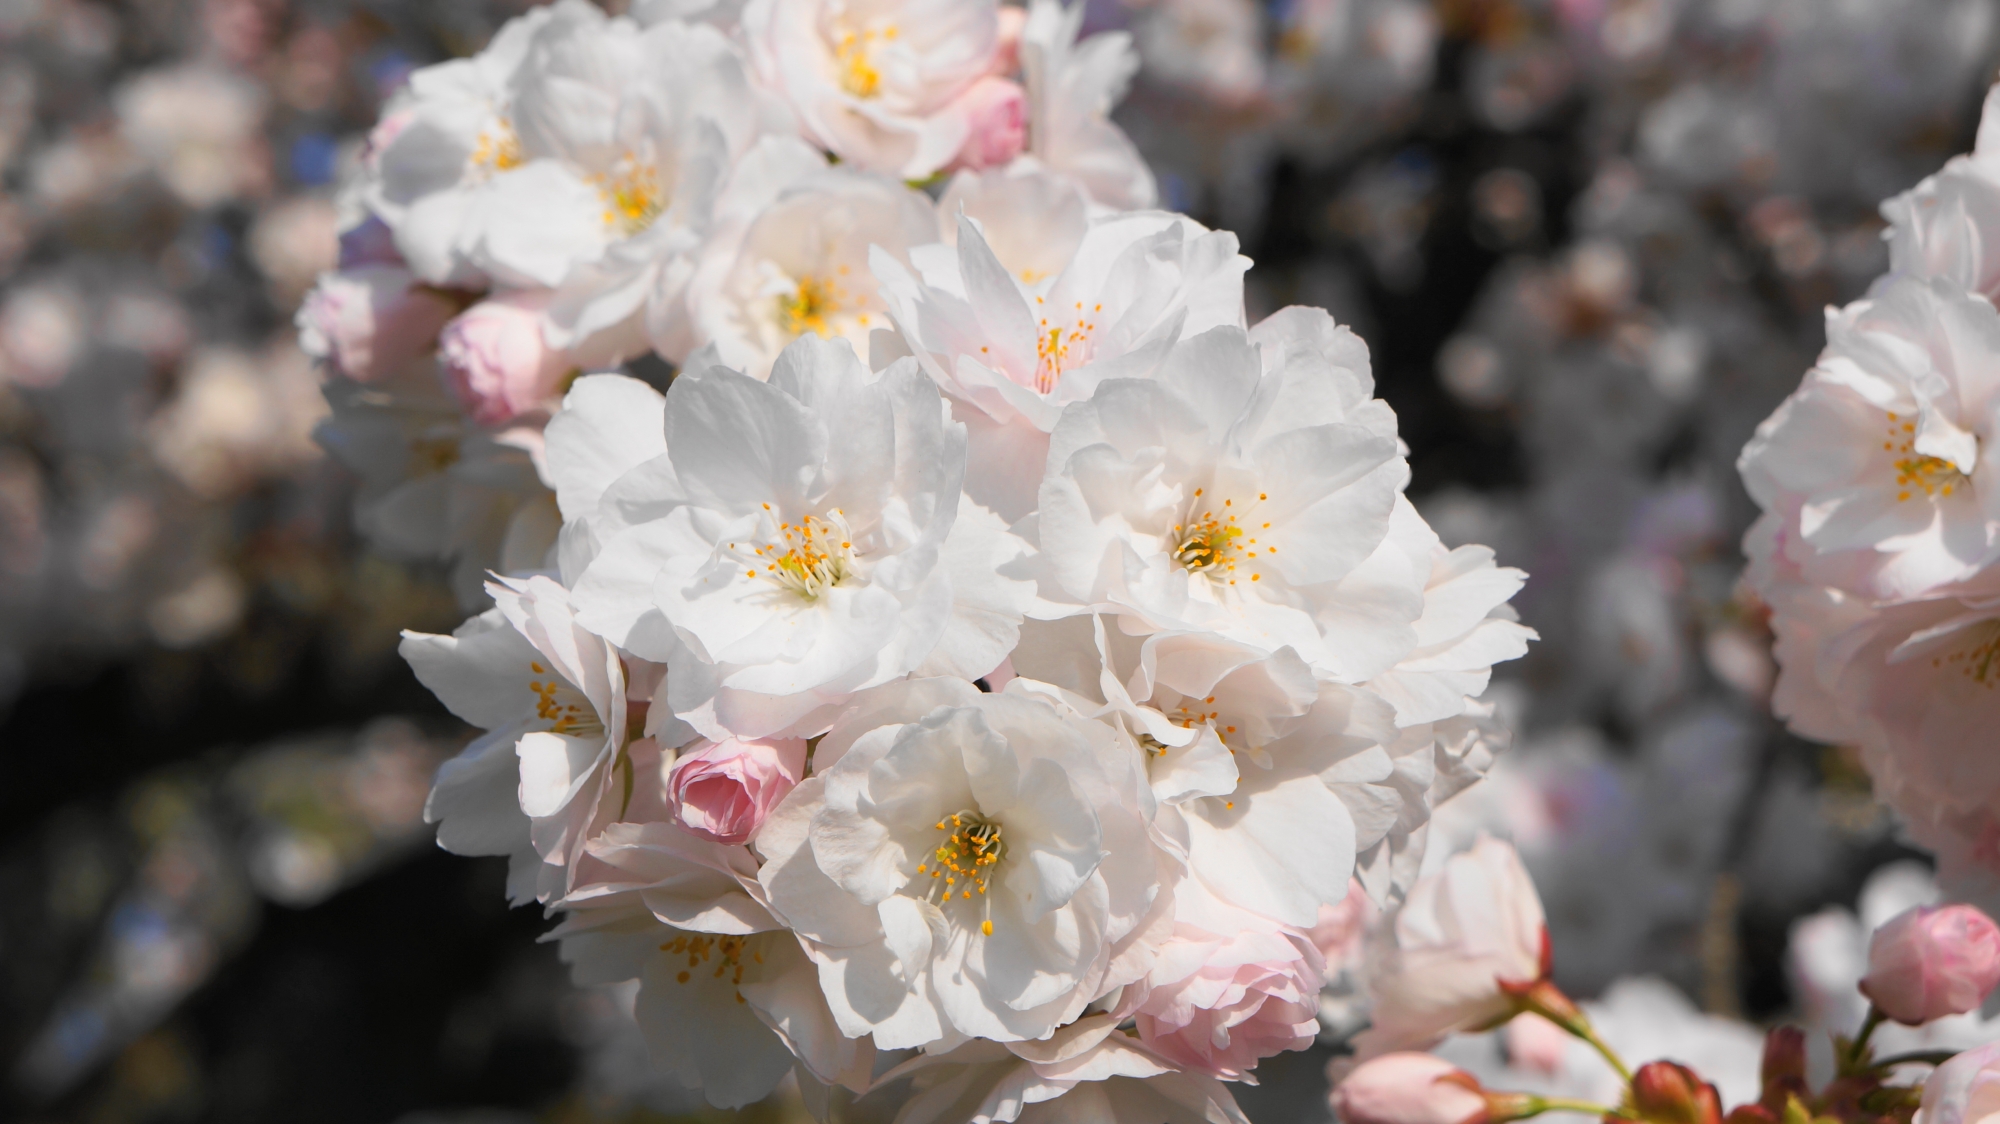 花びら一枚一枚は非常に繊細な桜